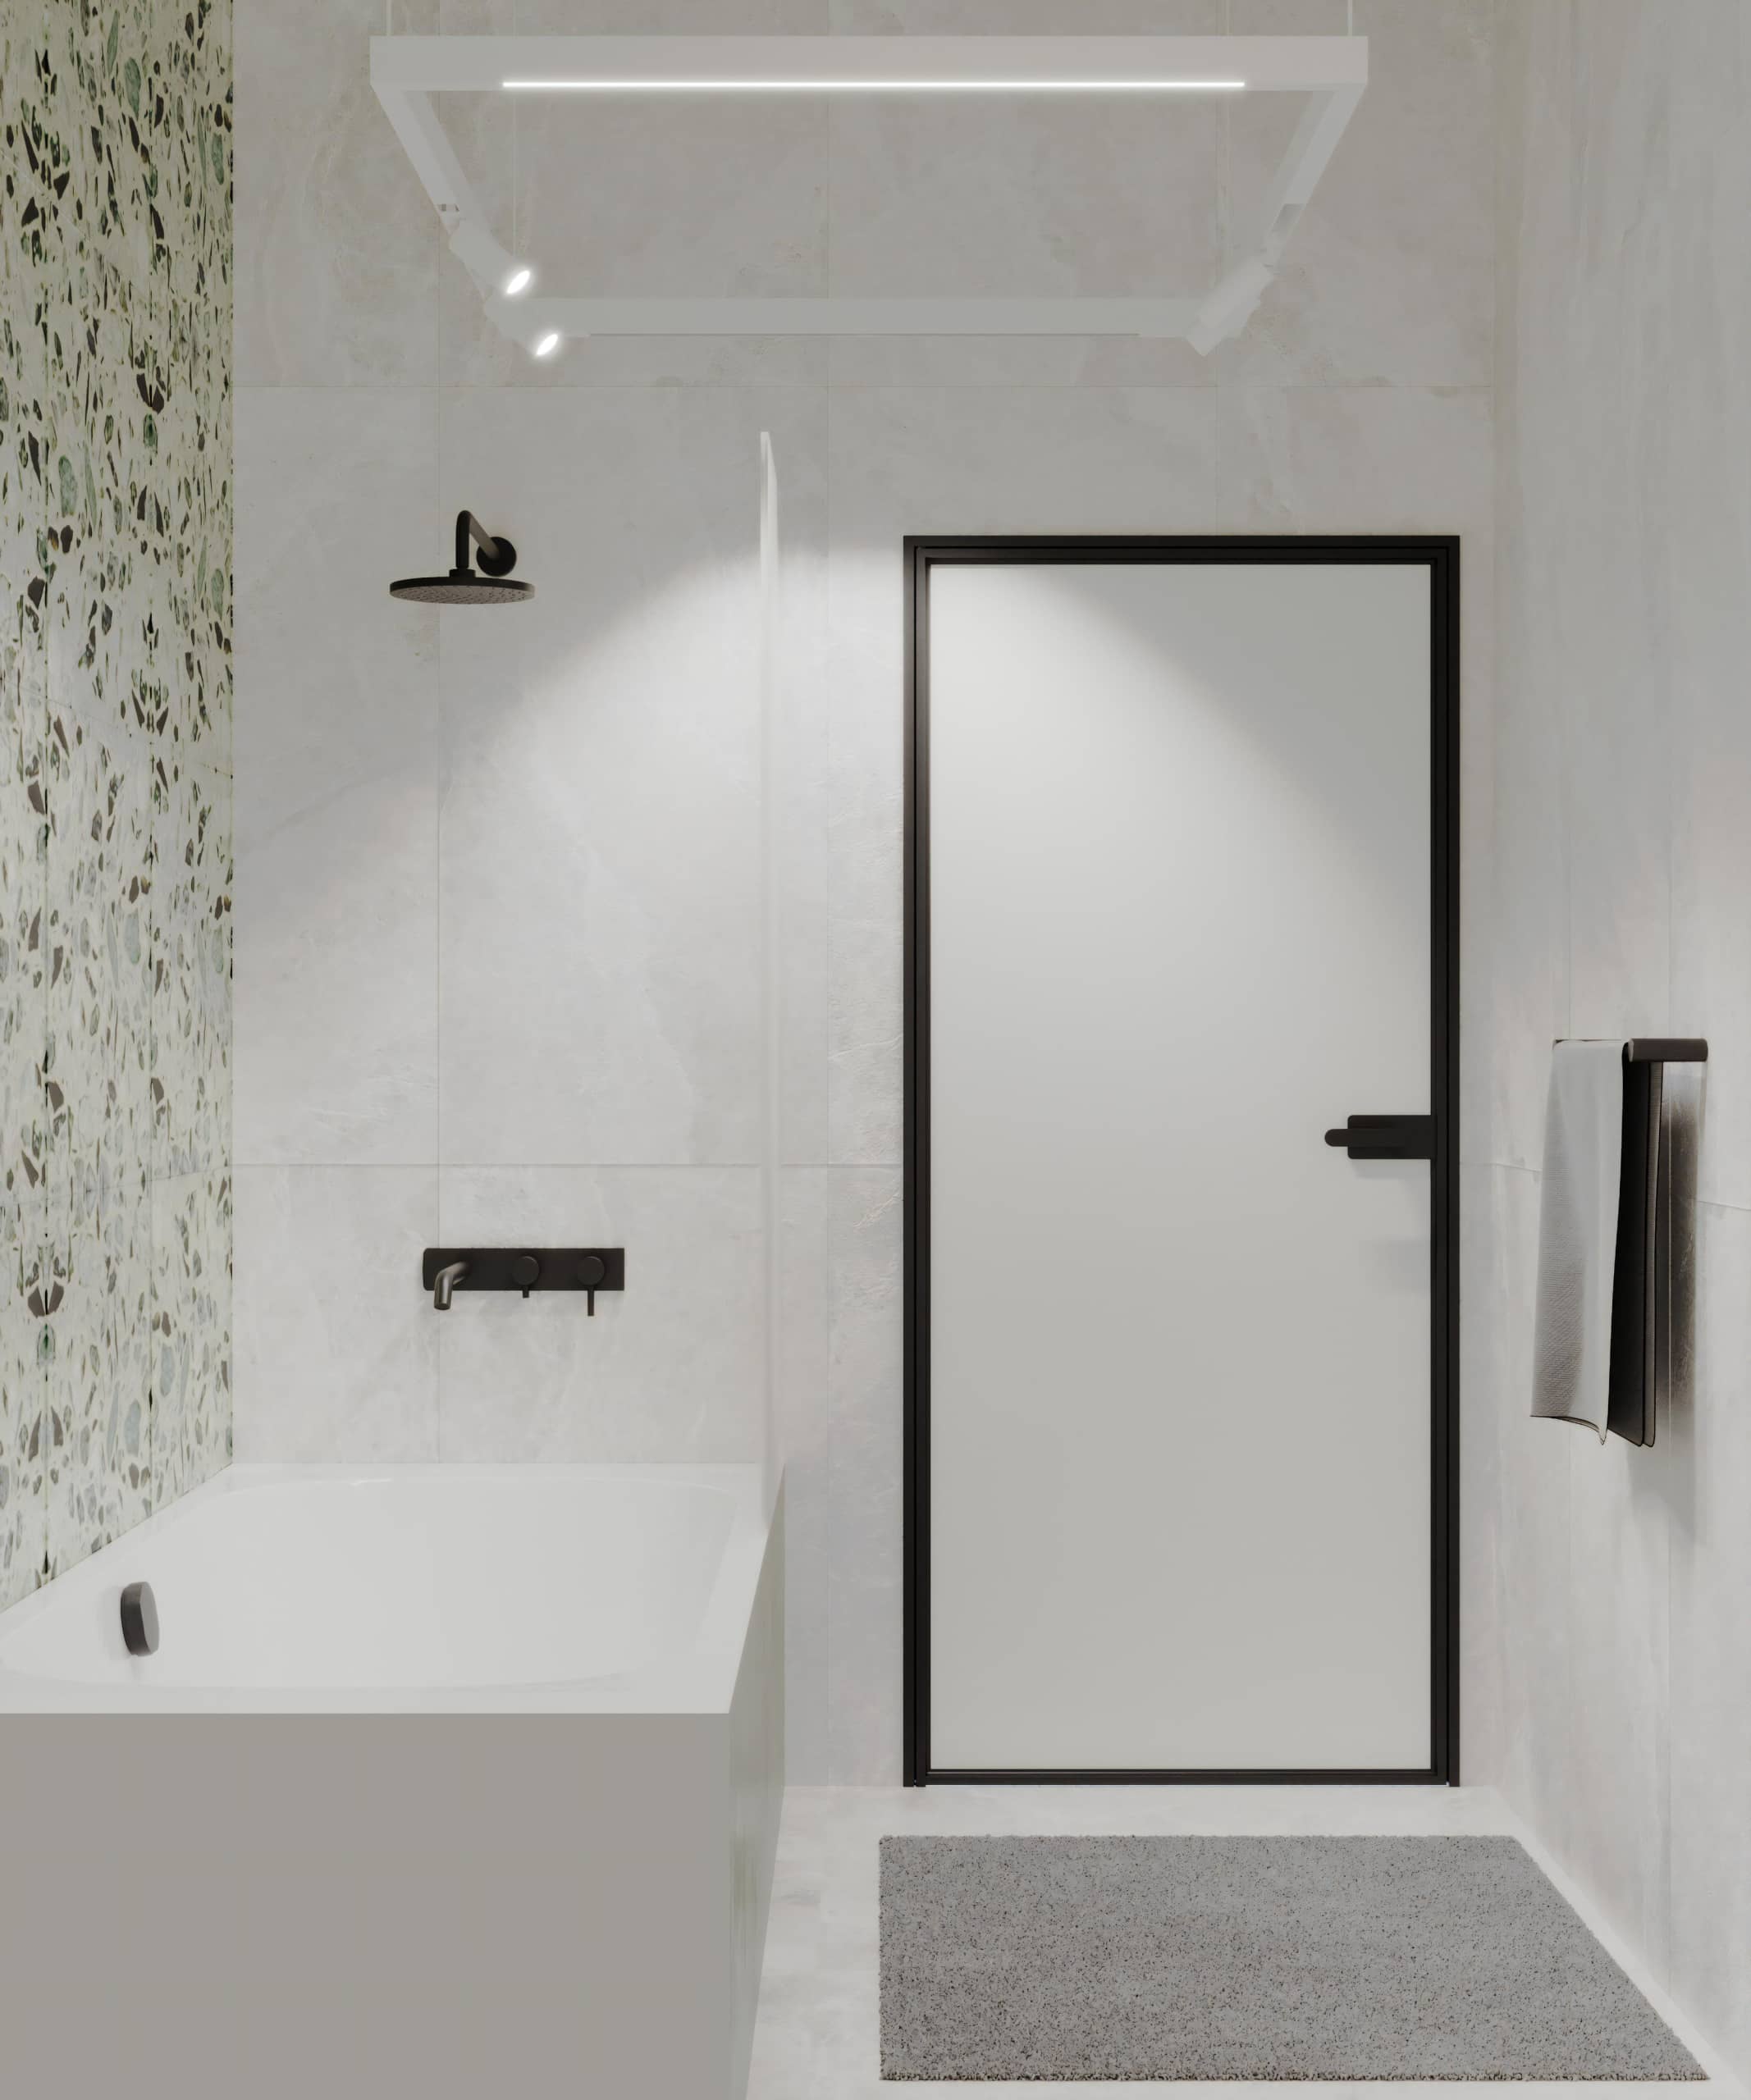 Оформление интерьера ванной комнаты в белый цвет. Фото № 72185.